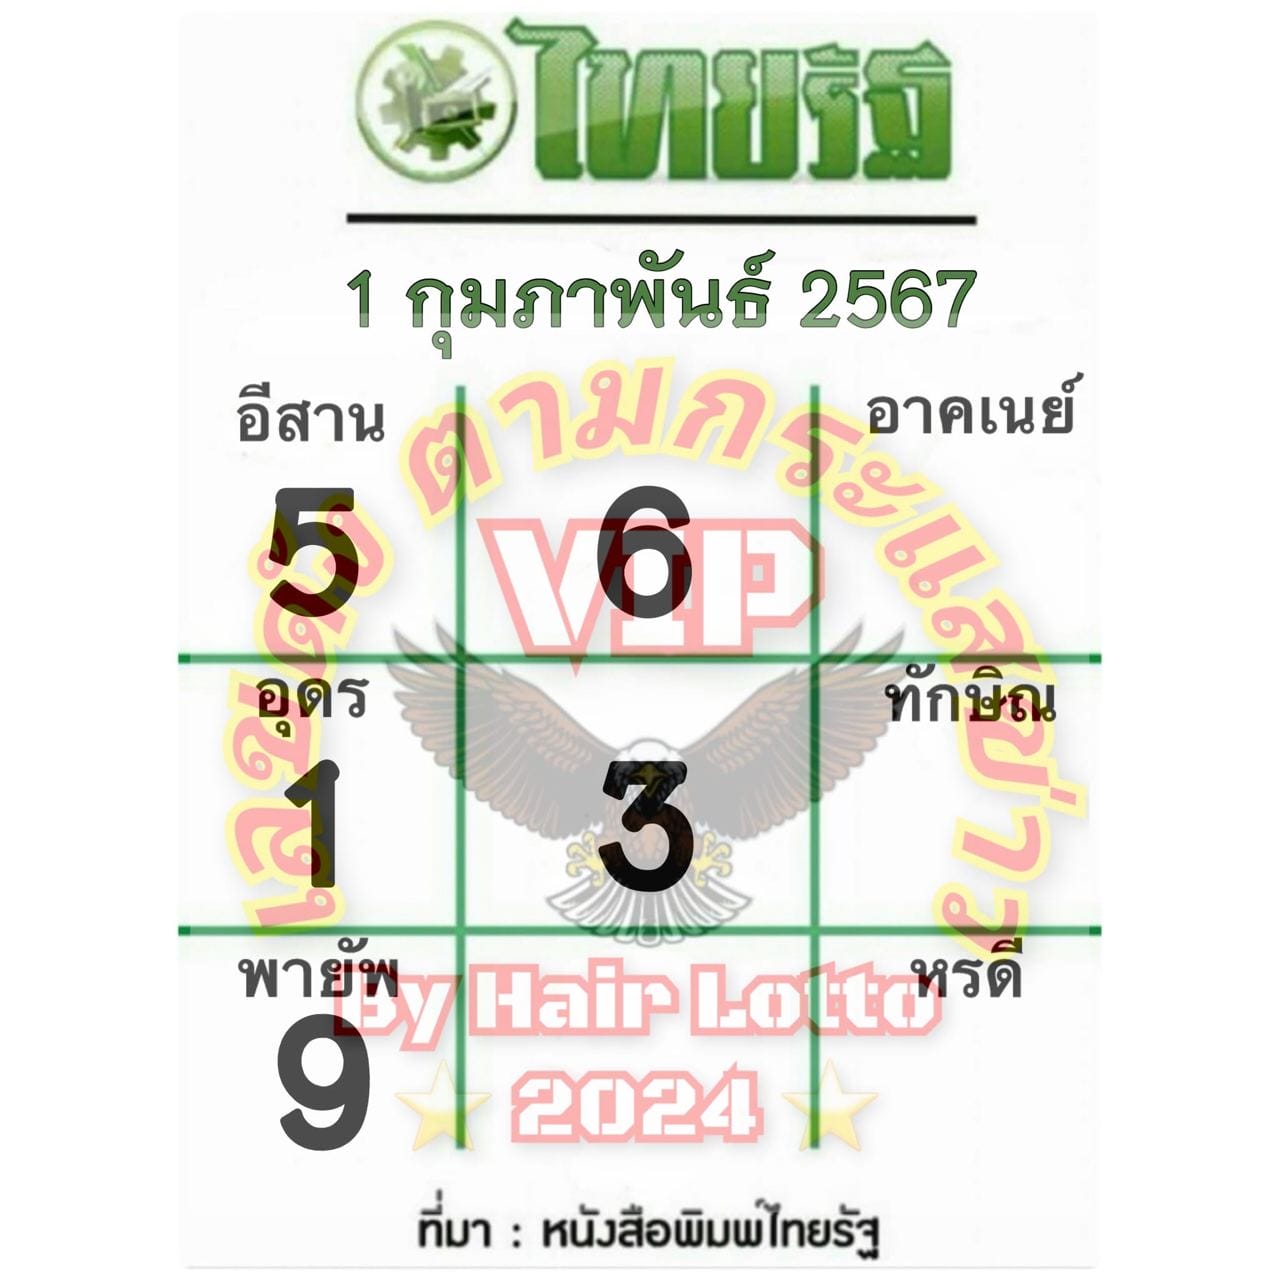 หวยไทยรัฐ 1 02 67 - "Thairath lottery 1 02 67"